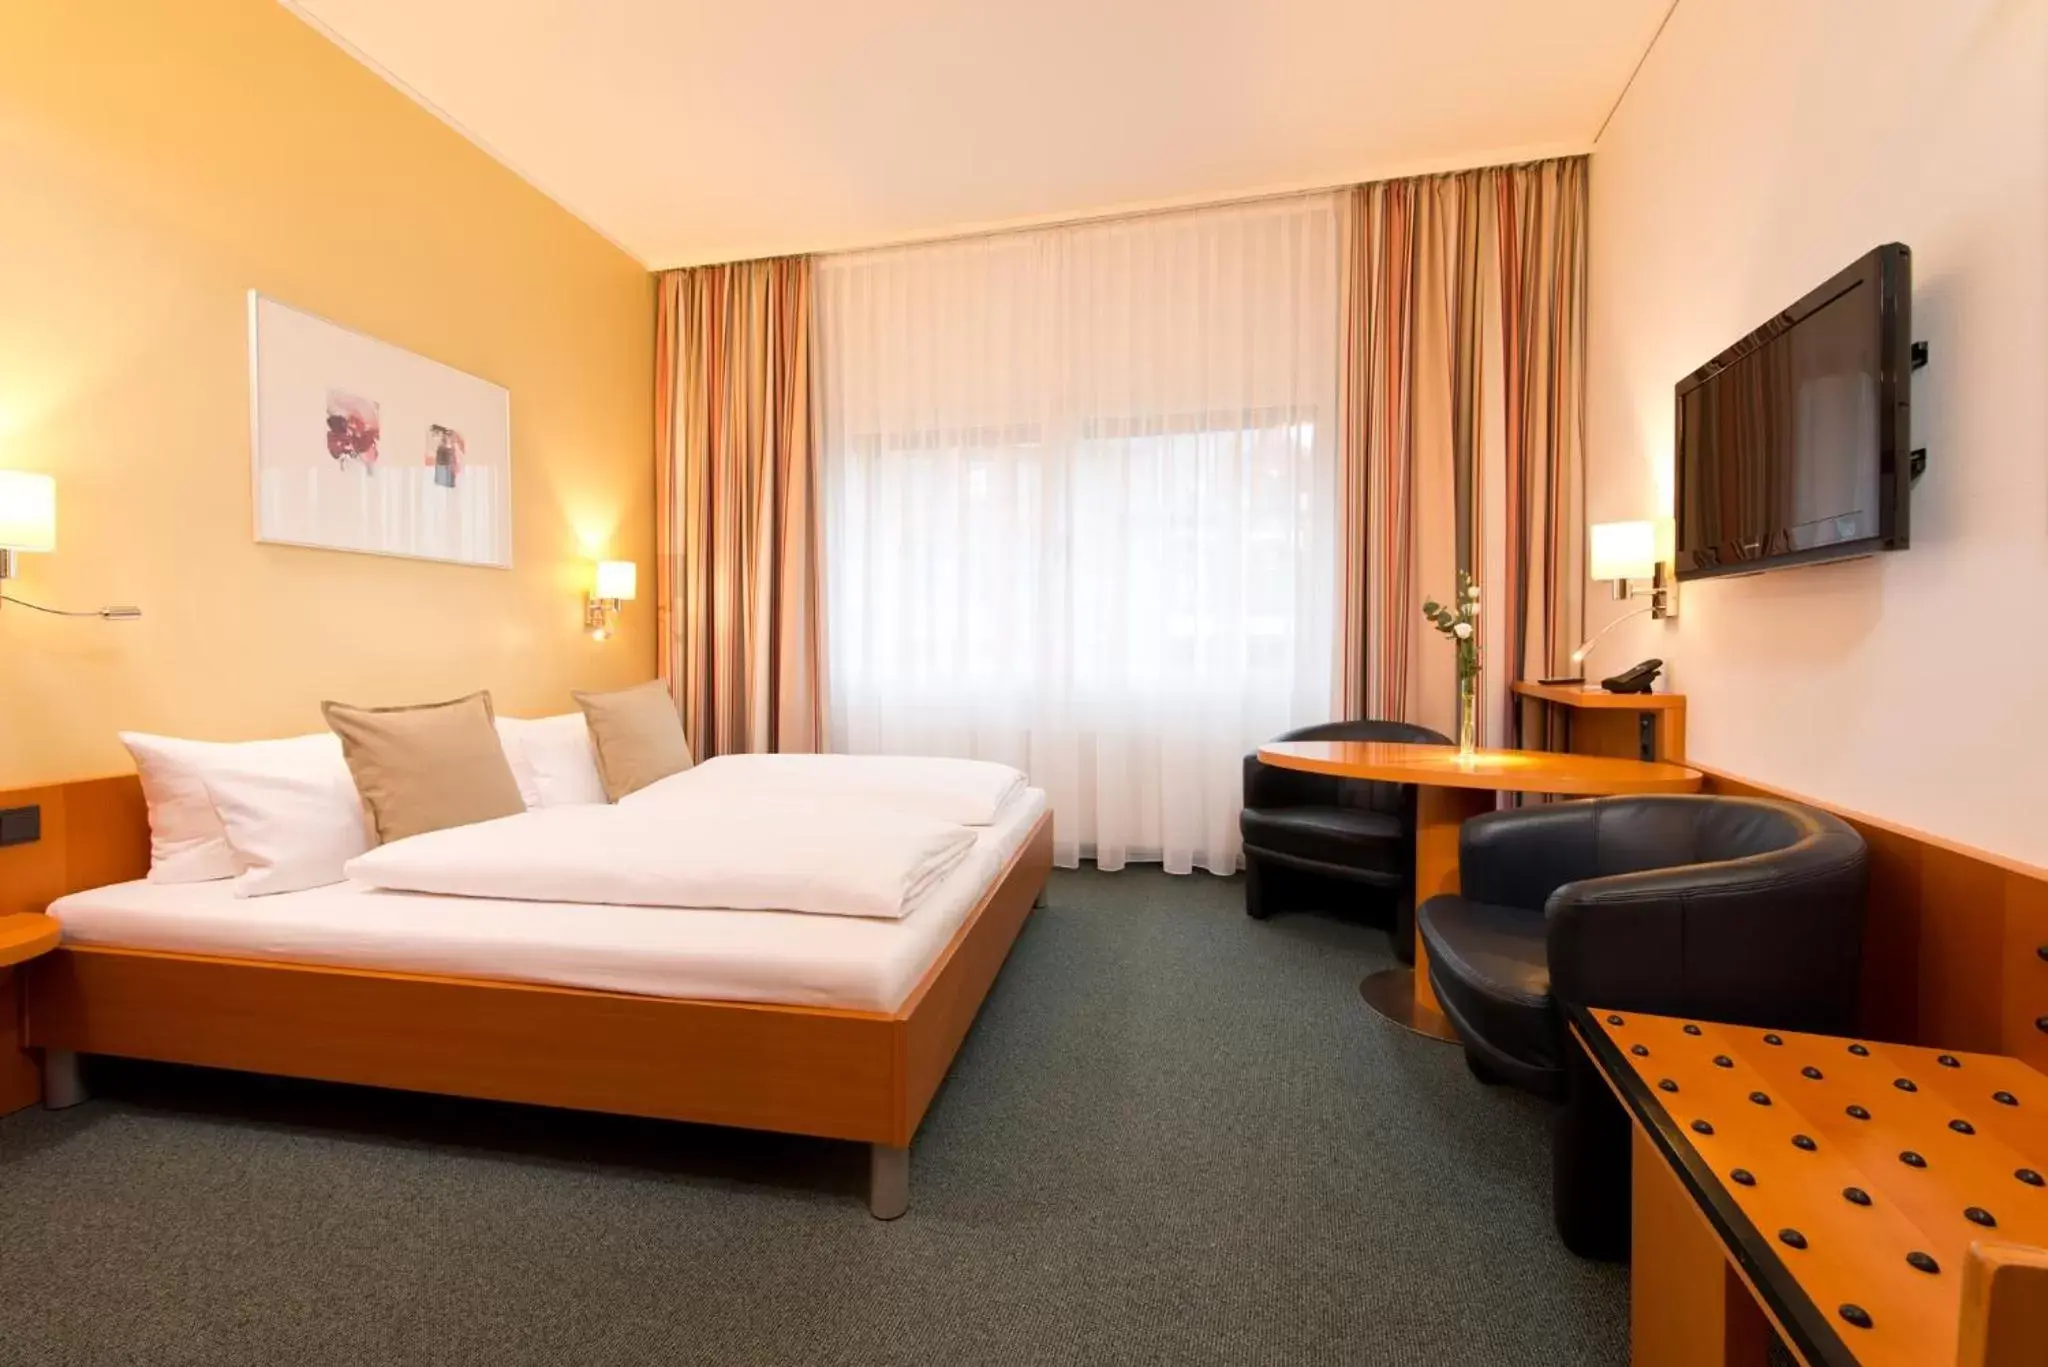 Bedroom in Hotel am Borsigturm